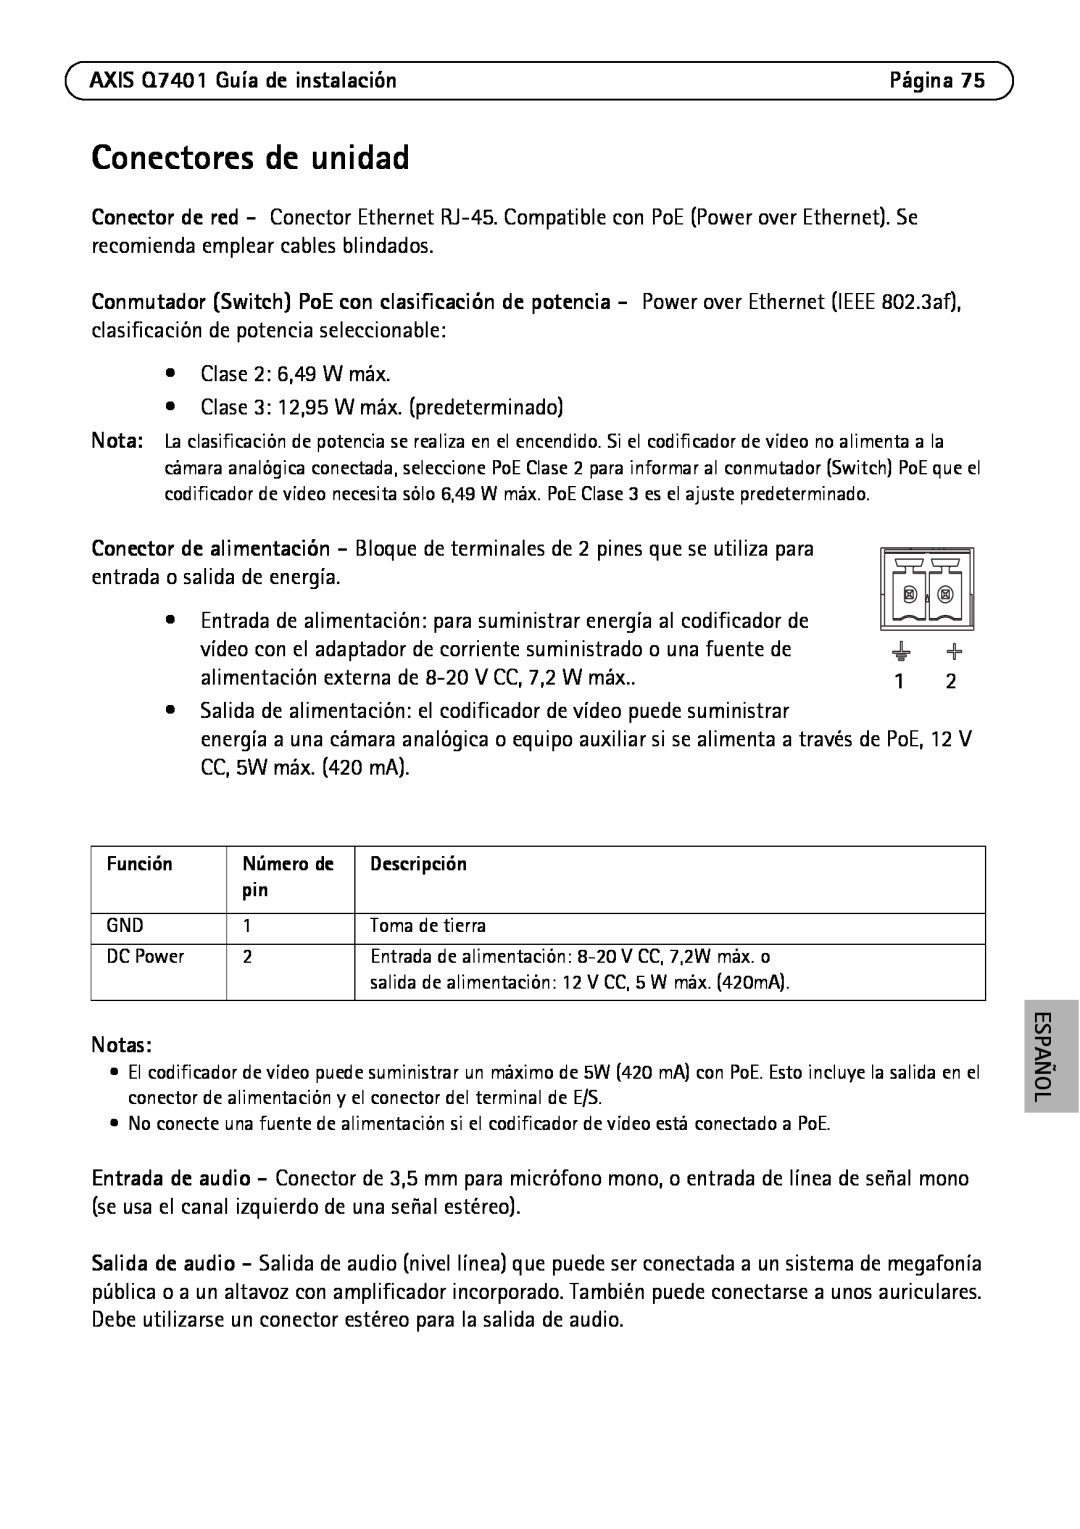 Axis Communications manual Conectores de unidad, AXIS Q7401 Guía de instalación, Notas, Español 